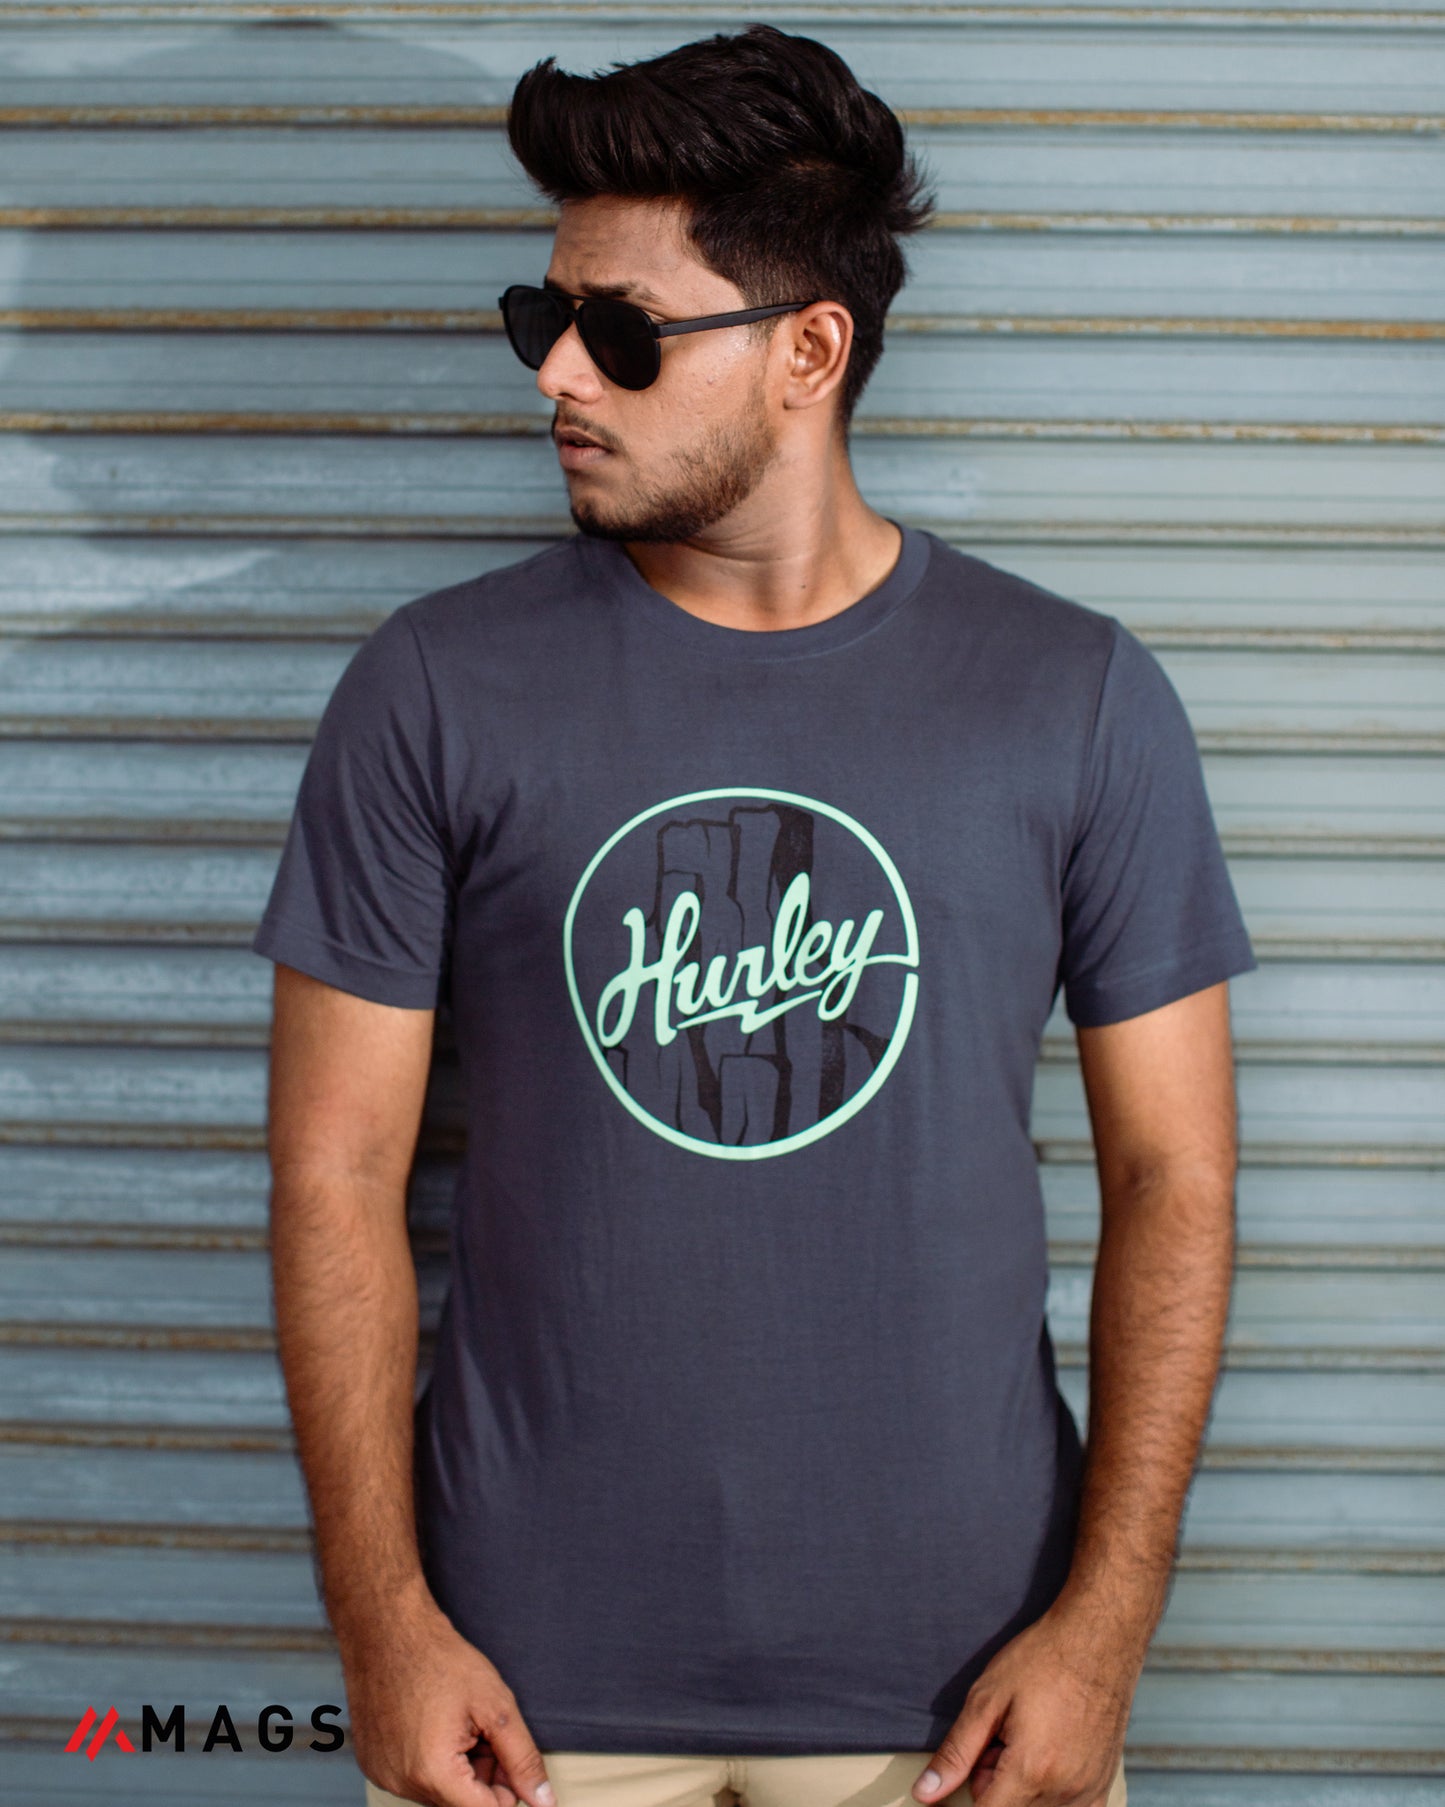 Hurley Men's Premium Fit T-Shirt